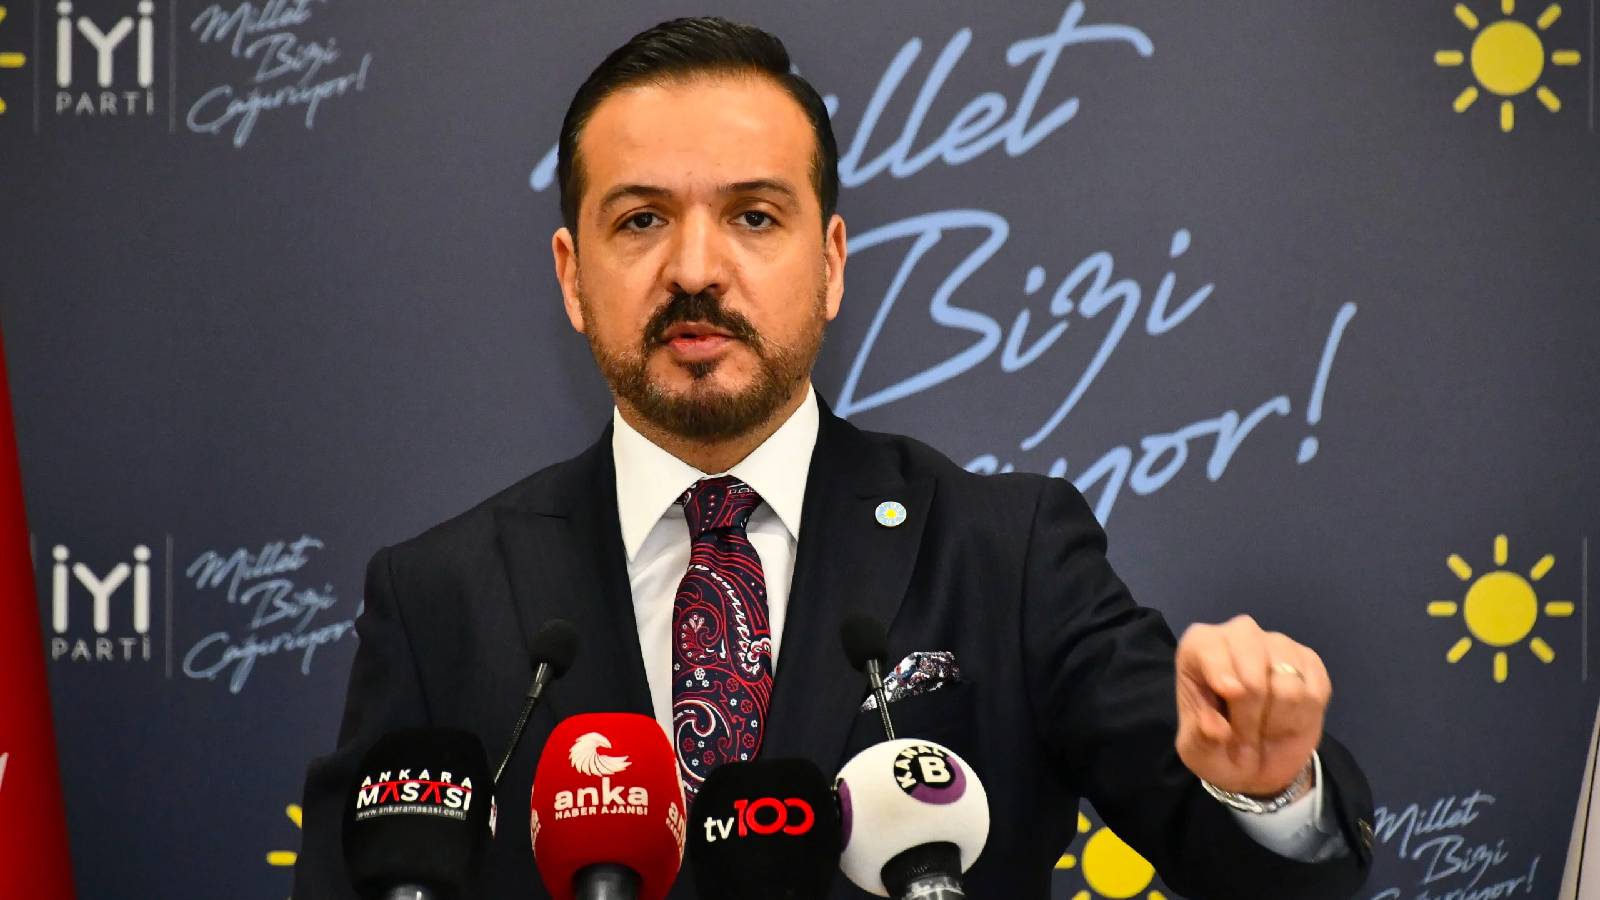 UYGUN Parti Sözcüsü Kürşad Şiddetli: Cumhurbaşkanı Erdoğan tarafından duyurulan "Genç Kart" uygulaması bizim projemizdi